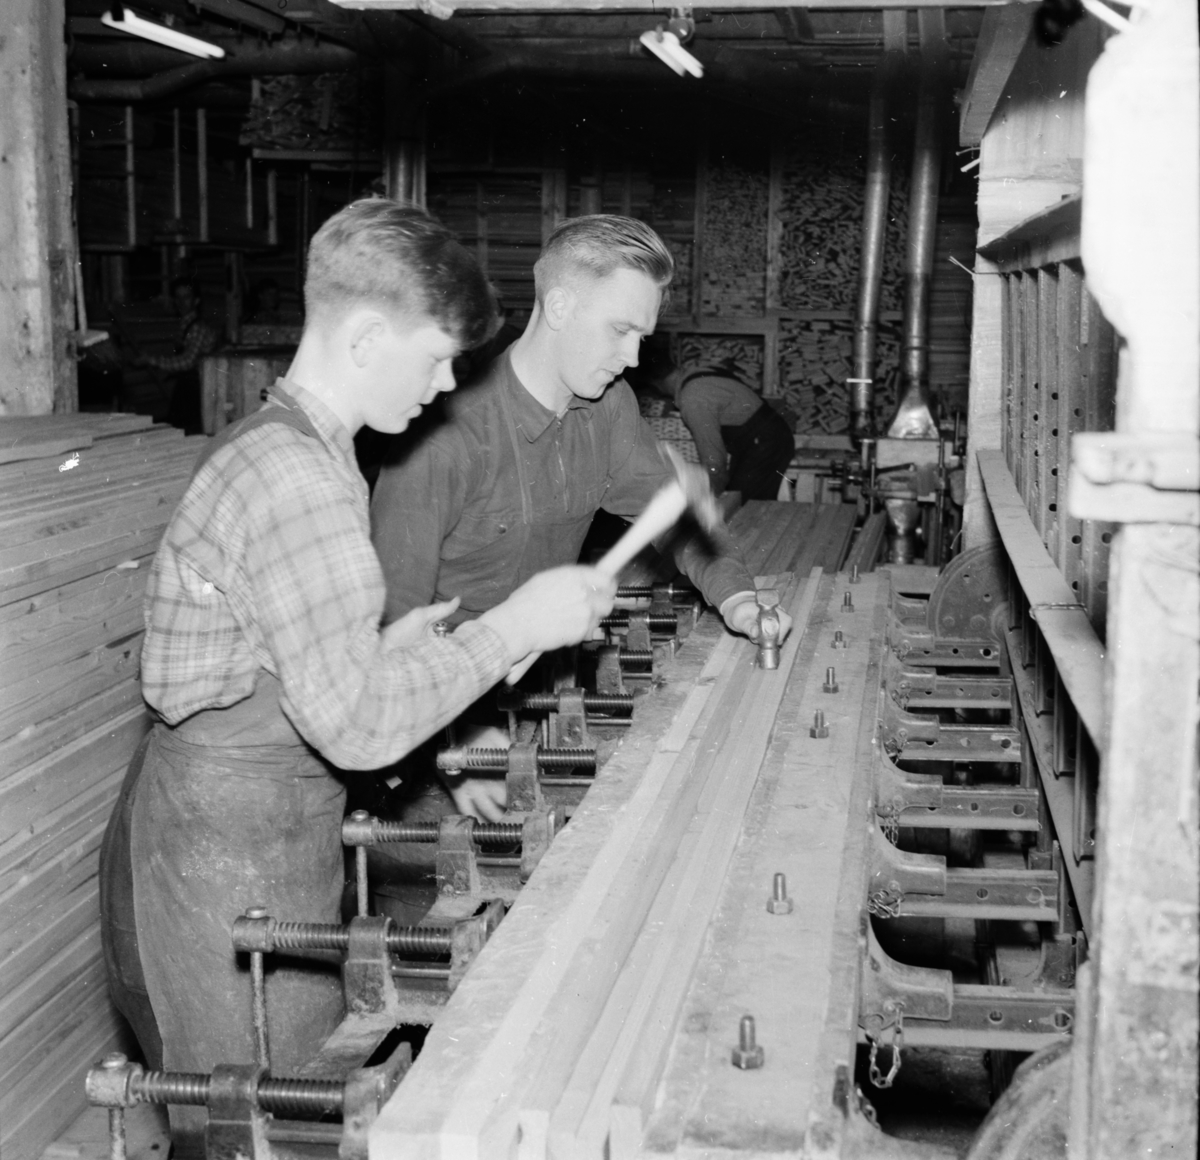 Lindbloms snickerifabrik
Alfta 1954